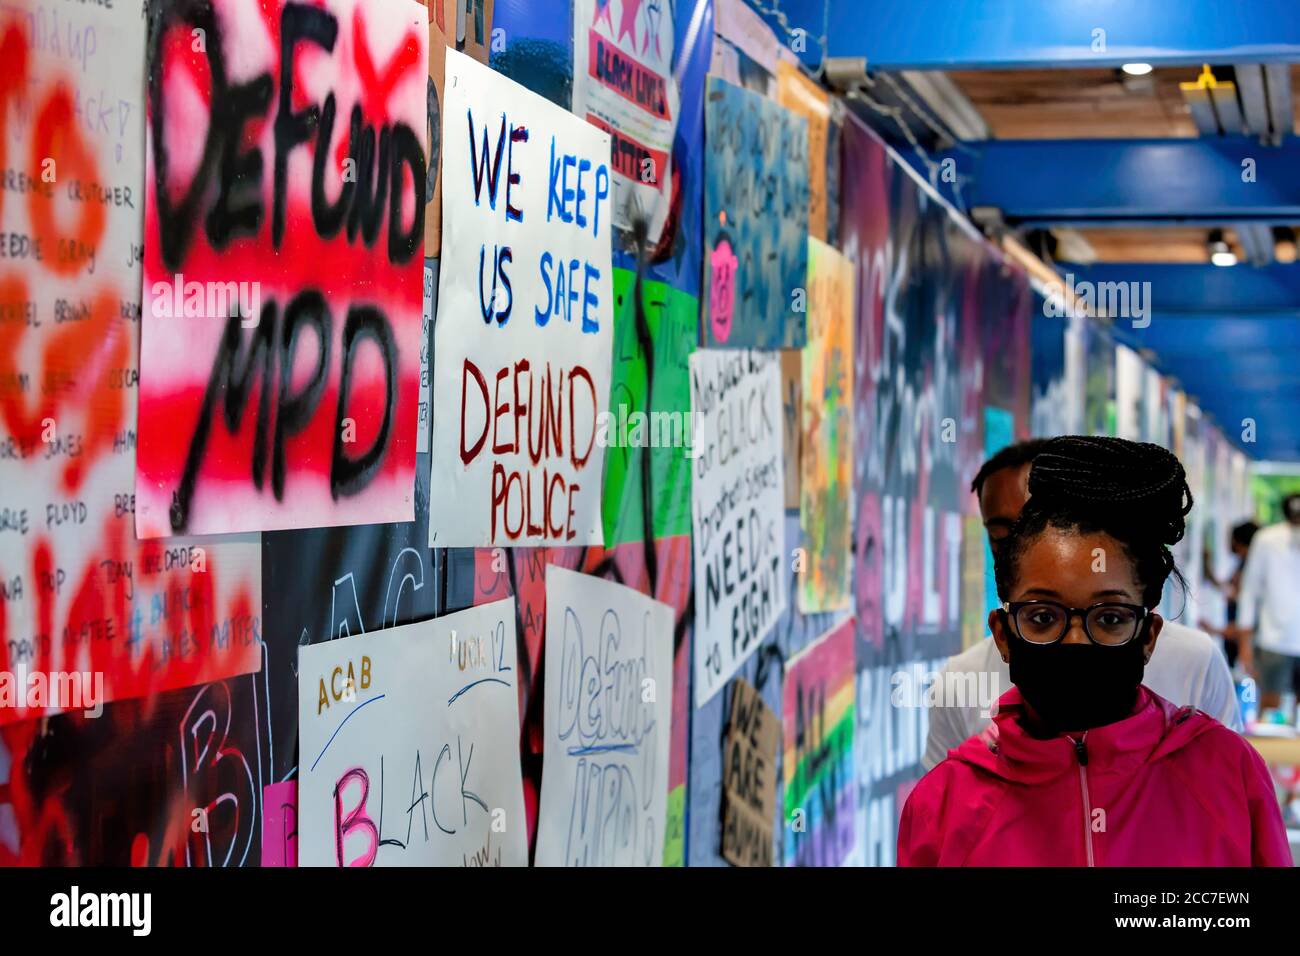 Reclame DC, un evento artístico en Washington, DC, Estados Unidos, para reemplazar el arte retirado por la Cámara de Comercio de Estados Unidos en Black Lives Matter Plaza Foto de stock